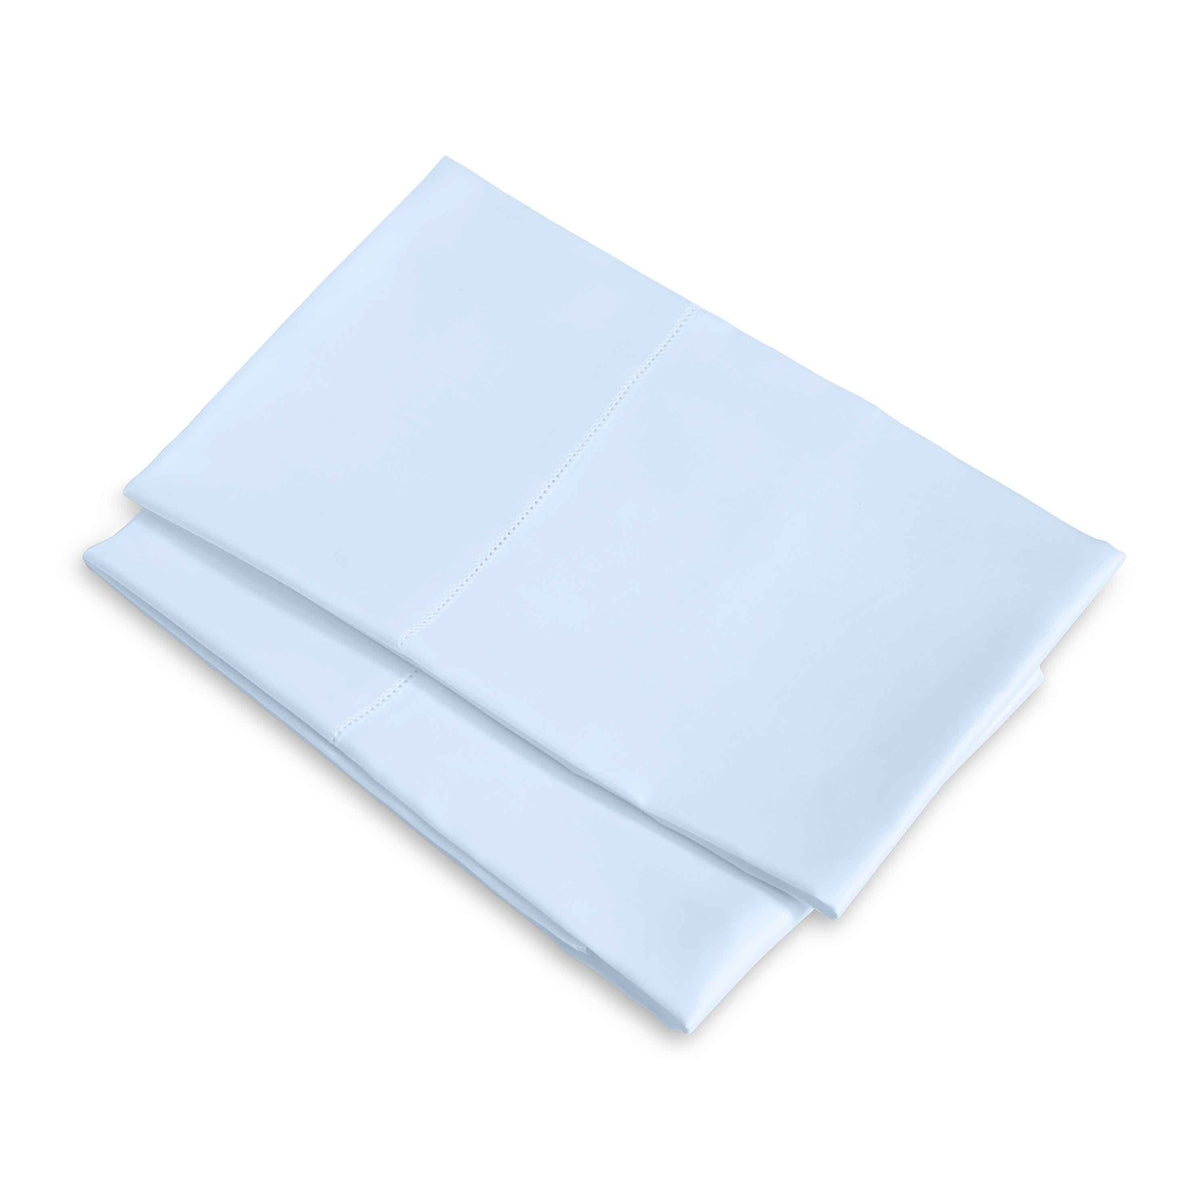 Clear Image of Signoria Raffaello Pillowcases in Sky Blue Color